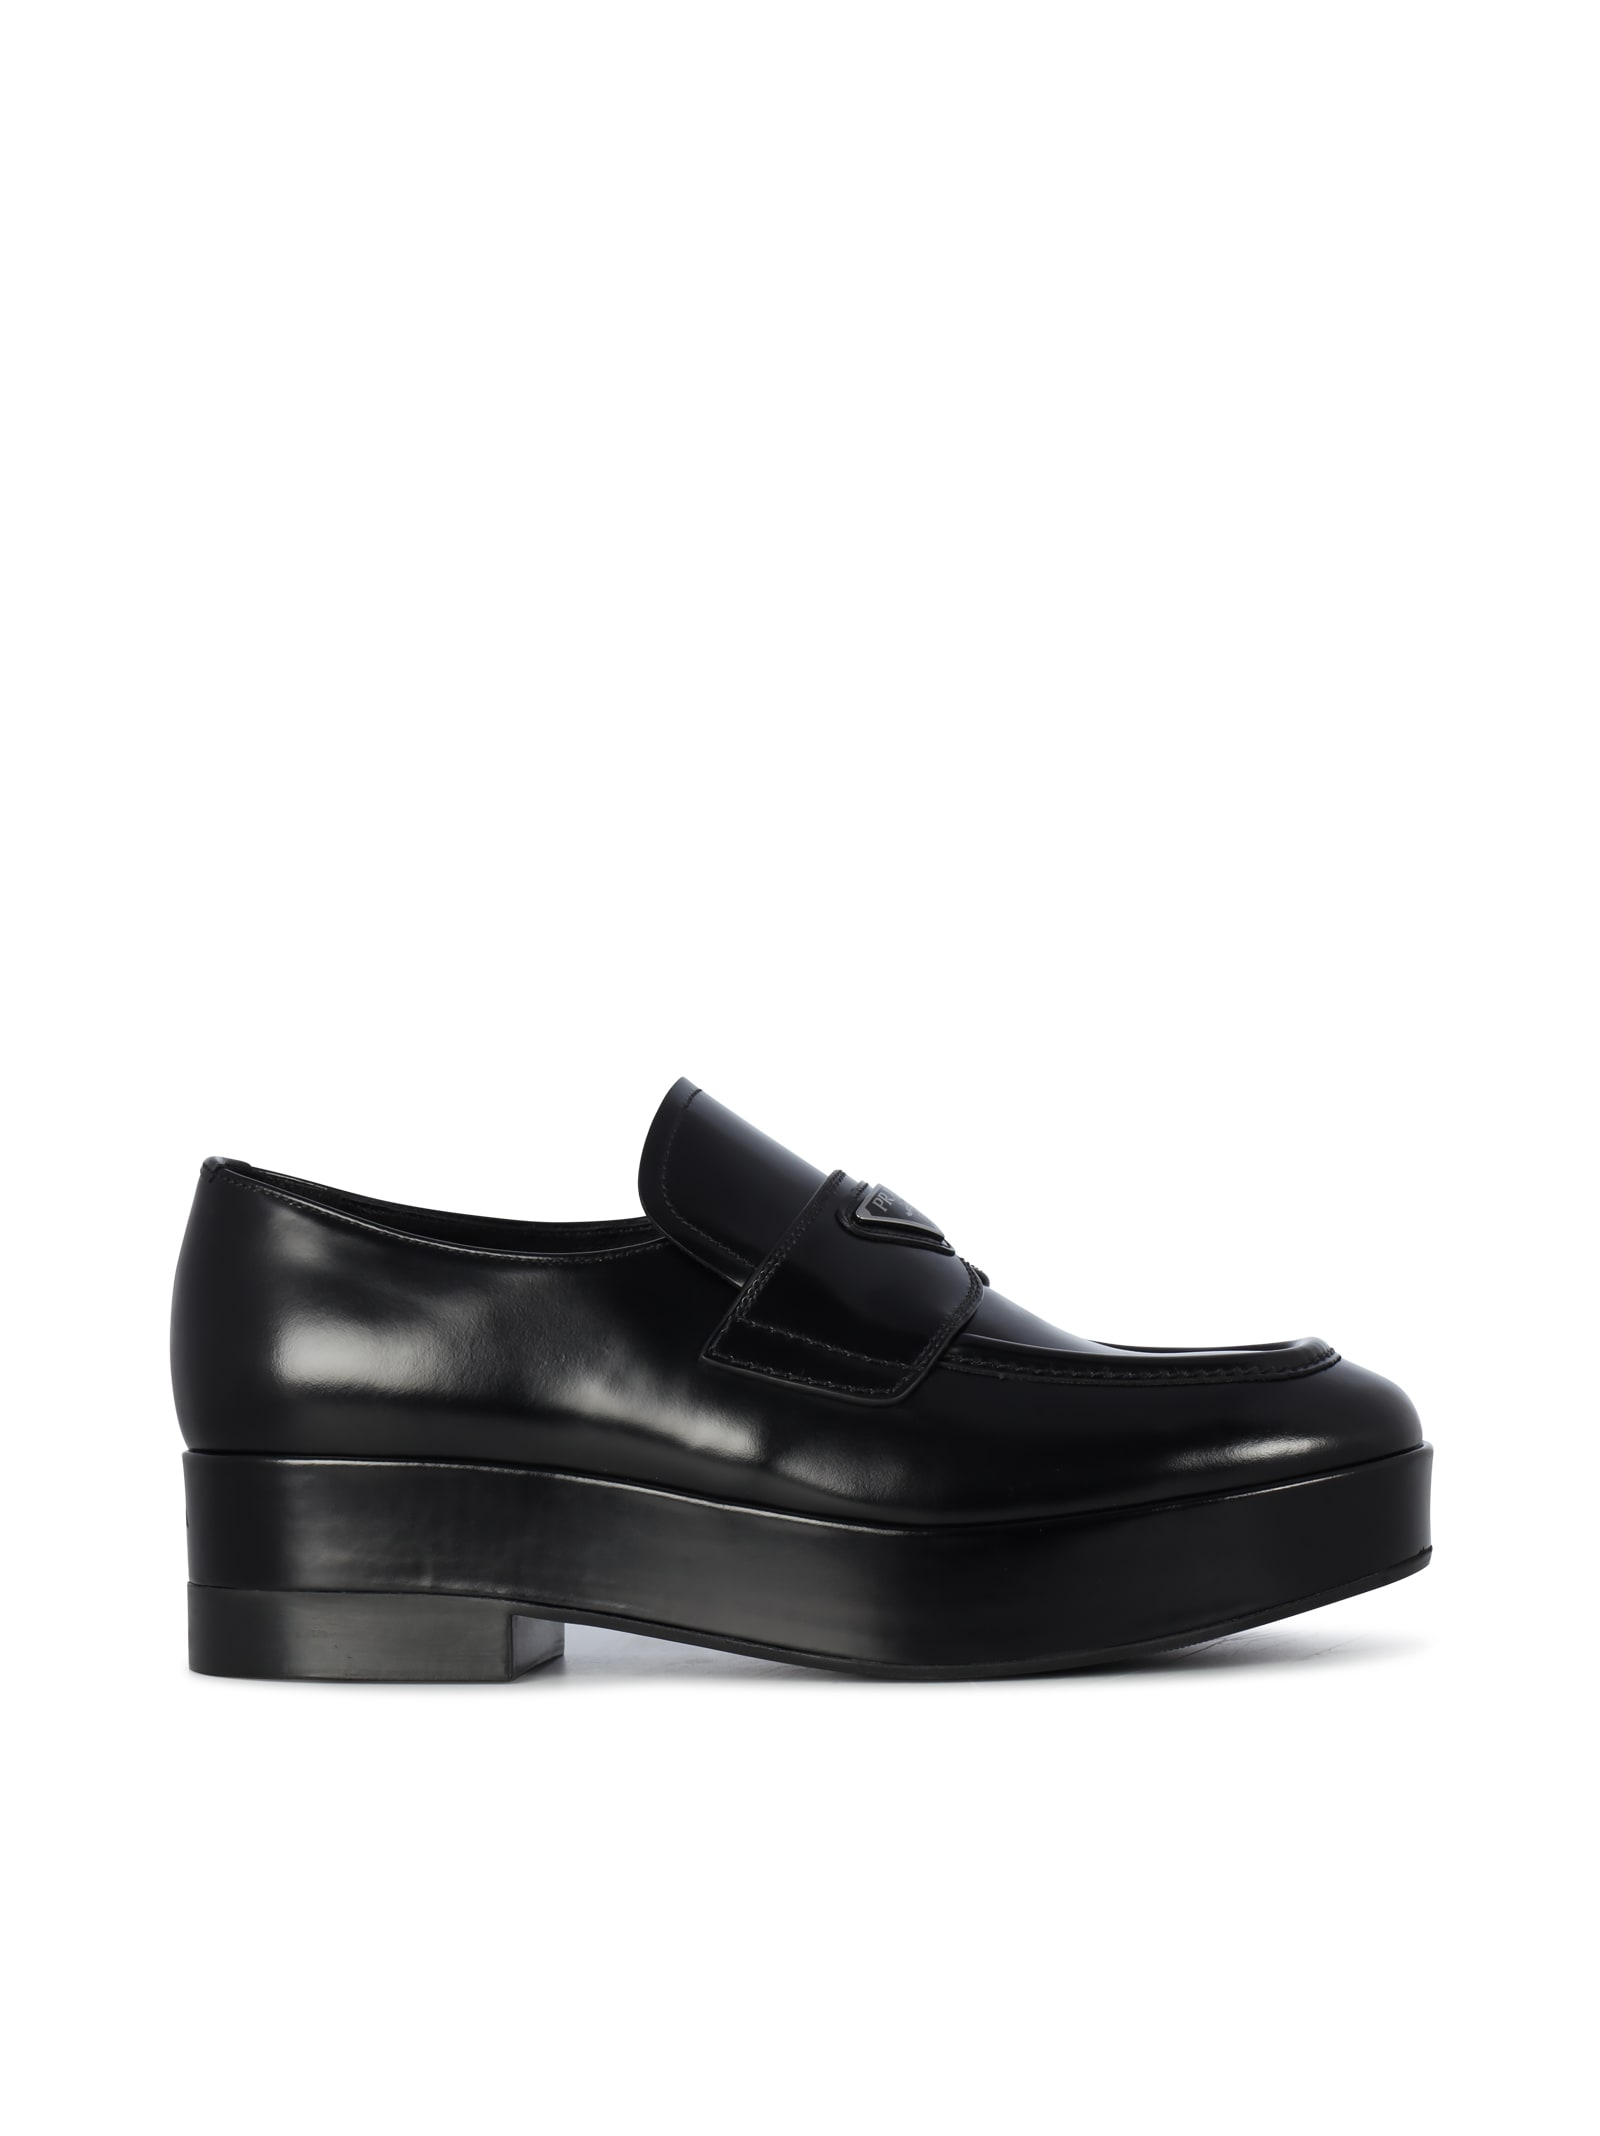 Prada Lets Loafers In Black